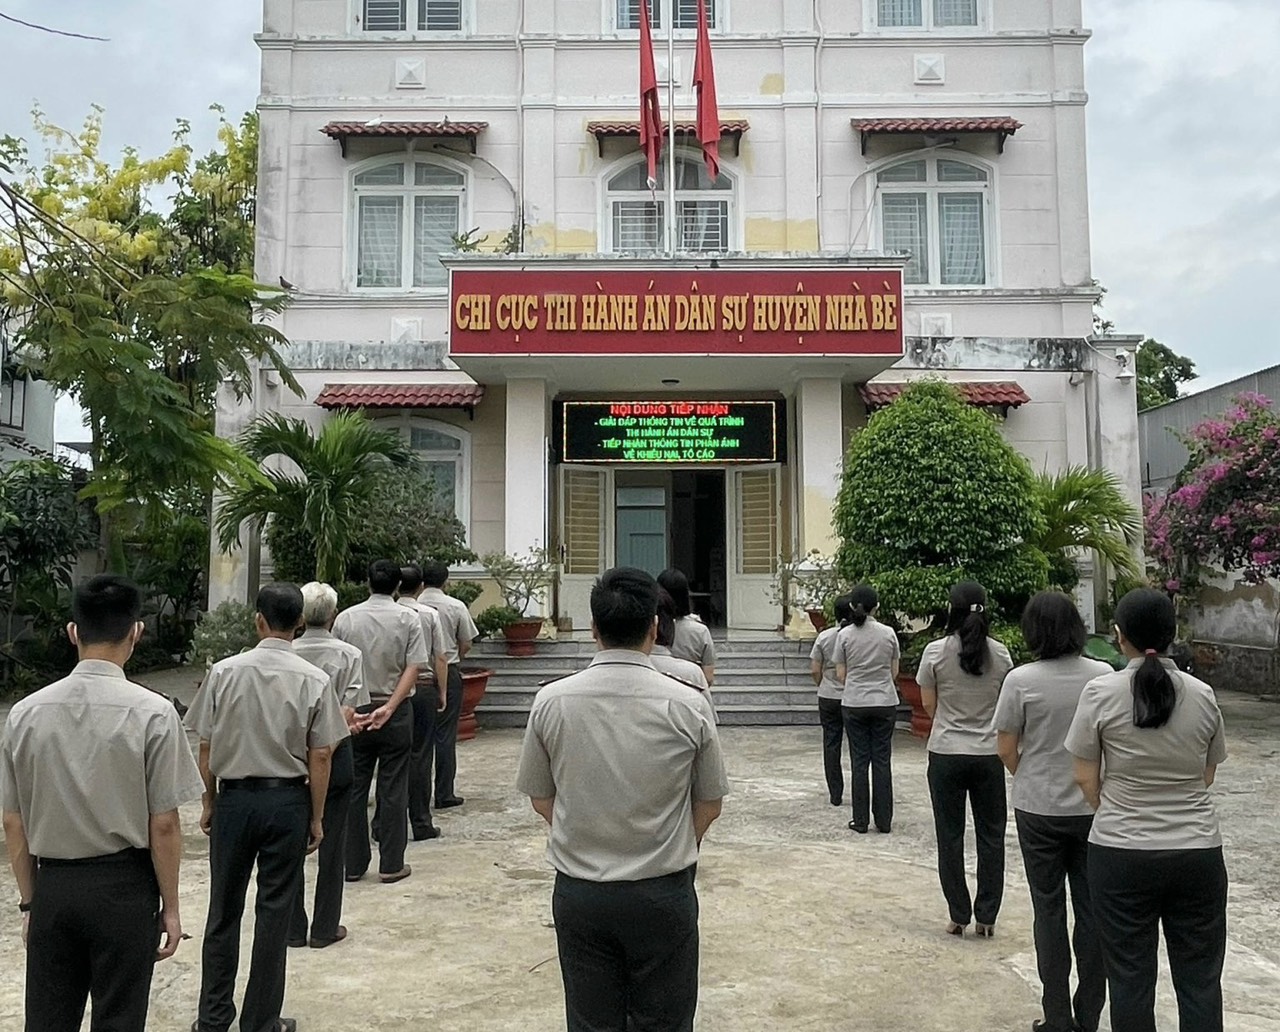 Chi cục Thi hành án dân sự huyện Nhà Bè duy trì chào cờ và sinh hoạt tư tưởng Hồ Chí Minh vào sáng thứ 2 hàng tuần tại trụ sở cơ quan.